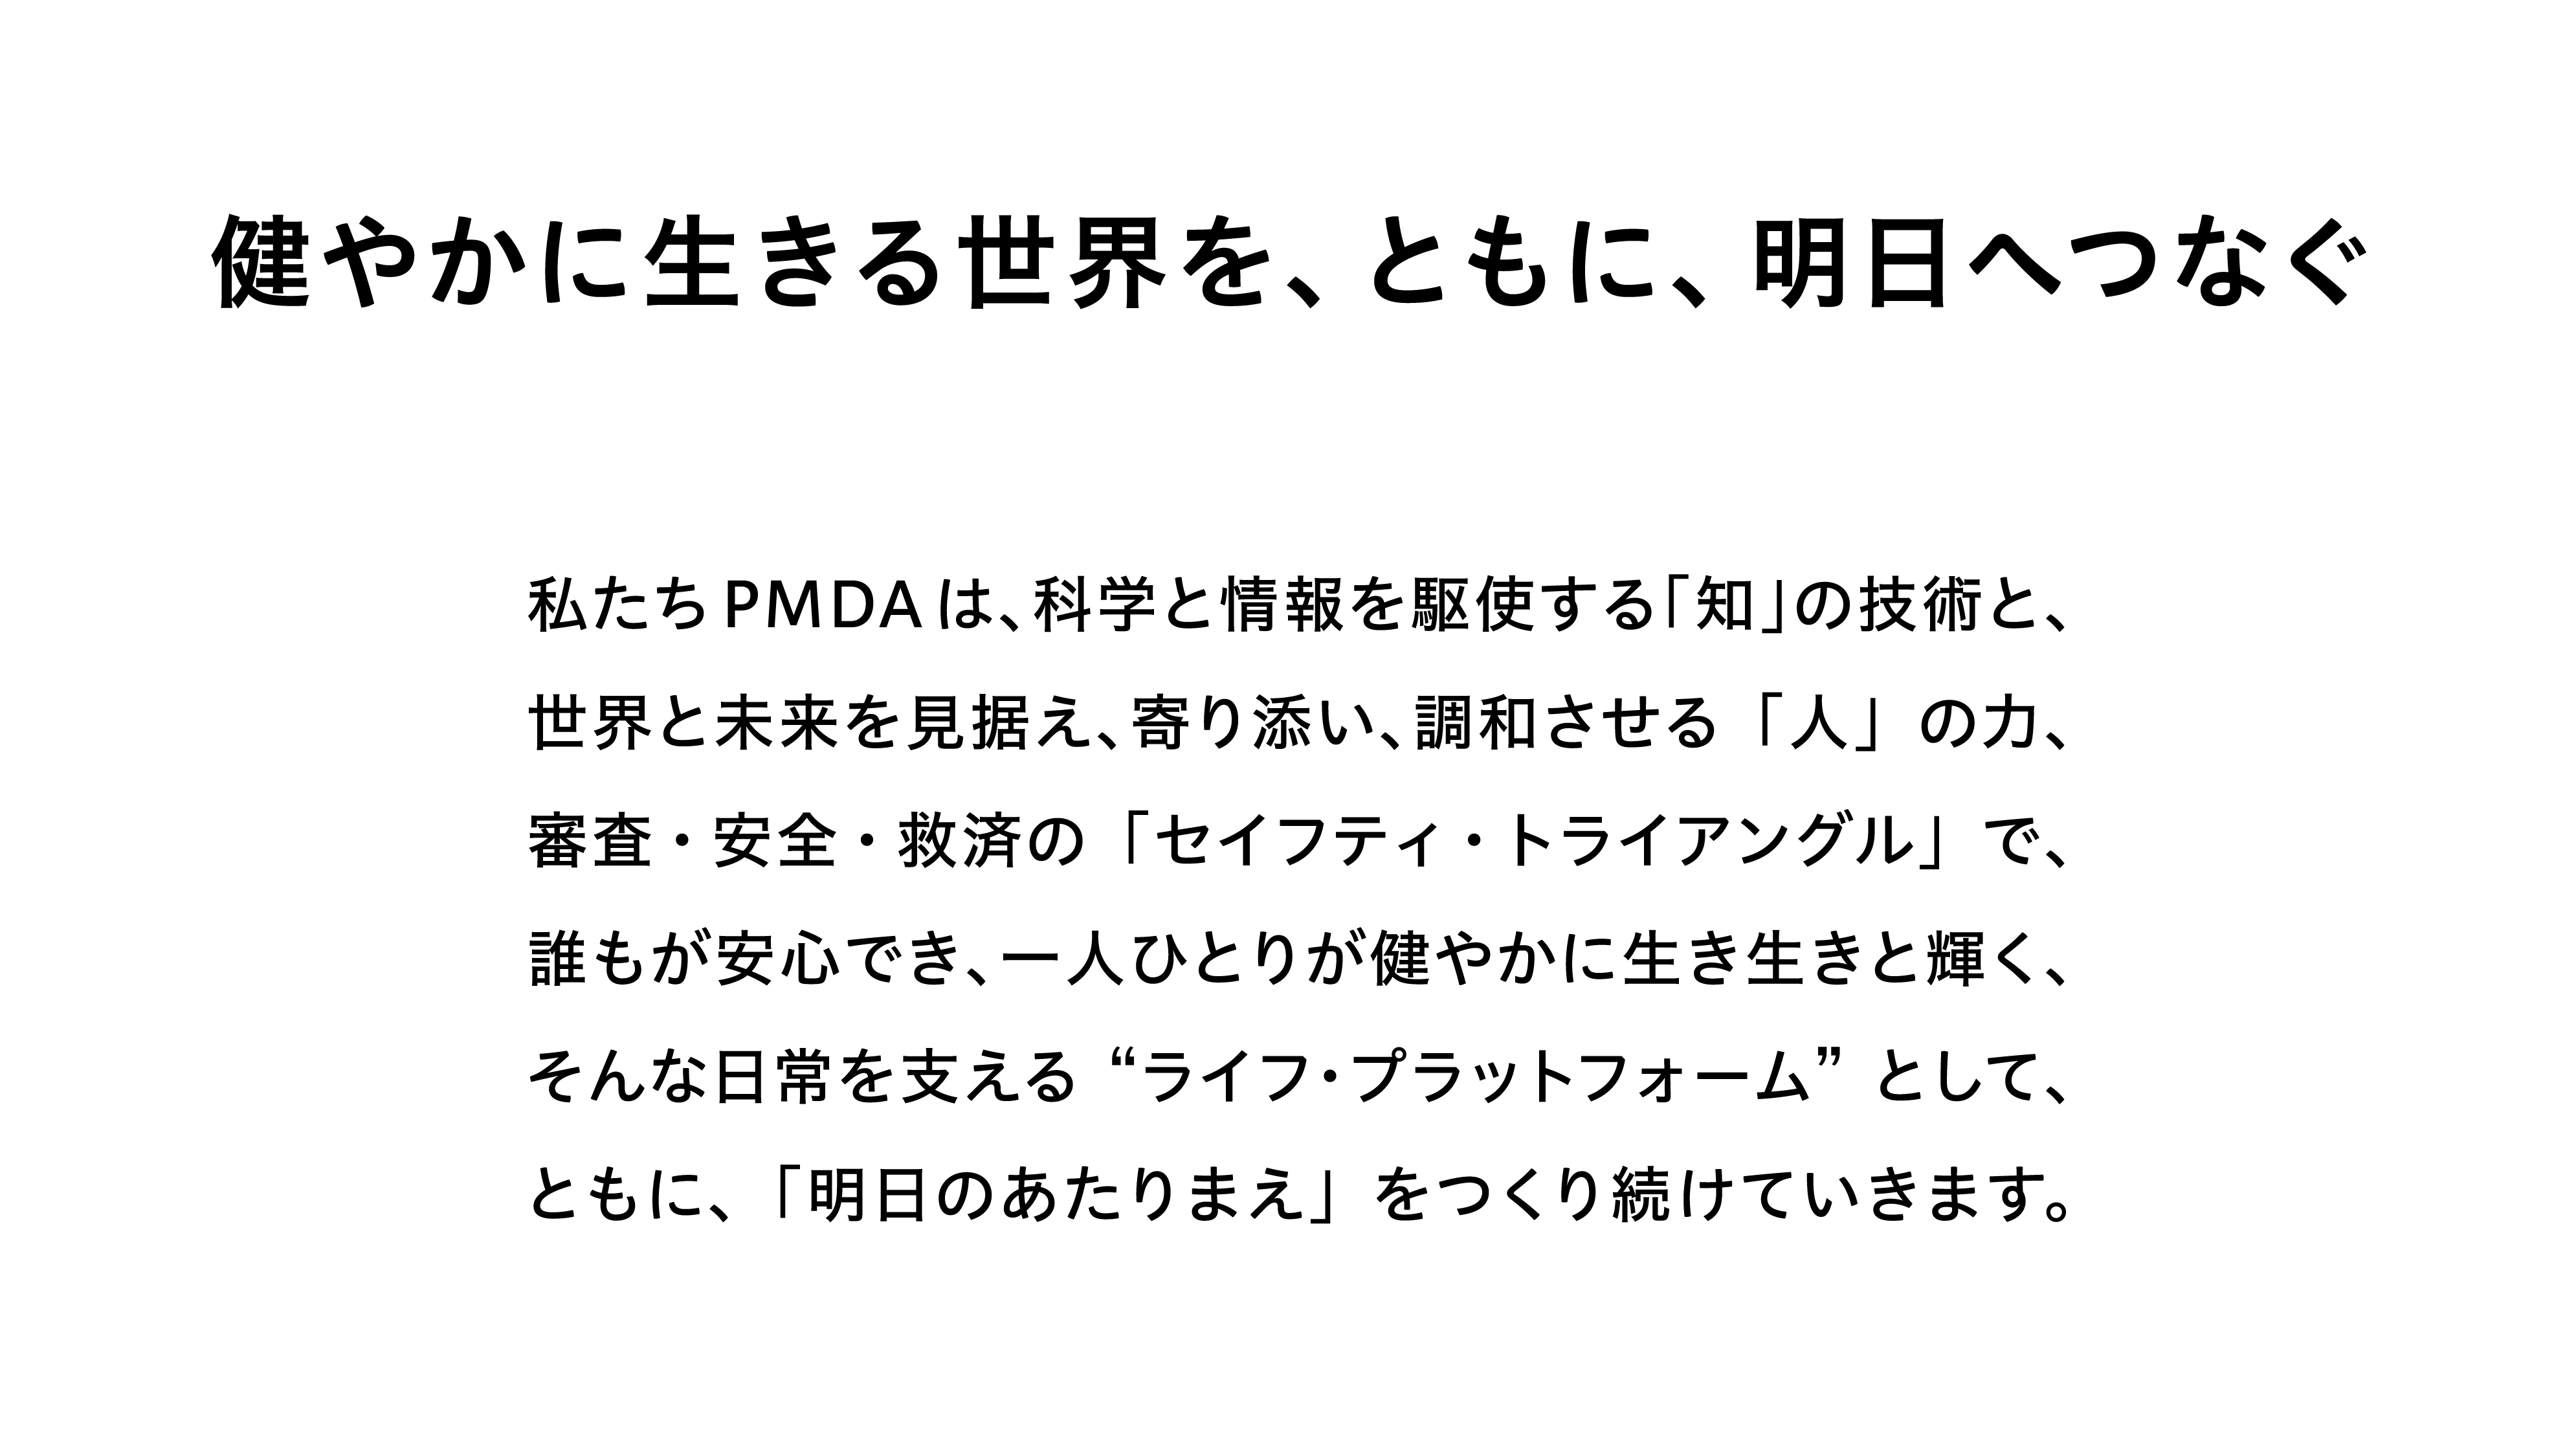 日本語版のパーパスおよびステートメントのイメージ画像です。クリックするとPDFファイルが開きます。